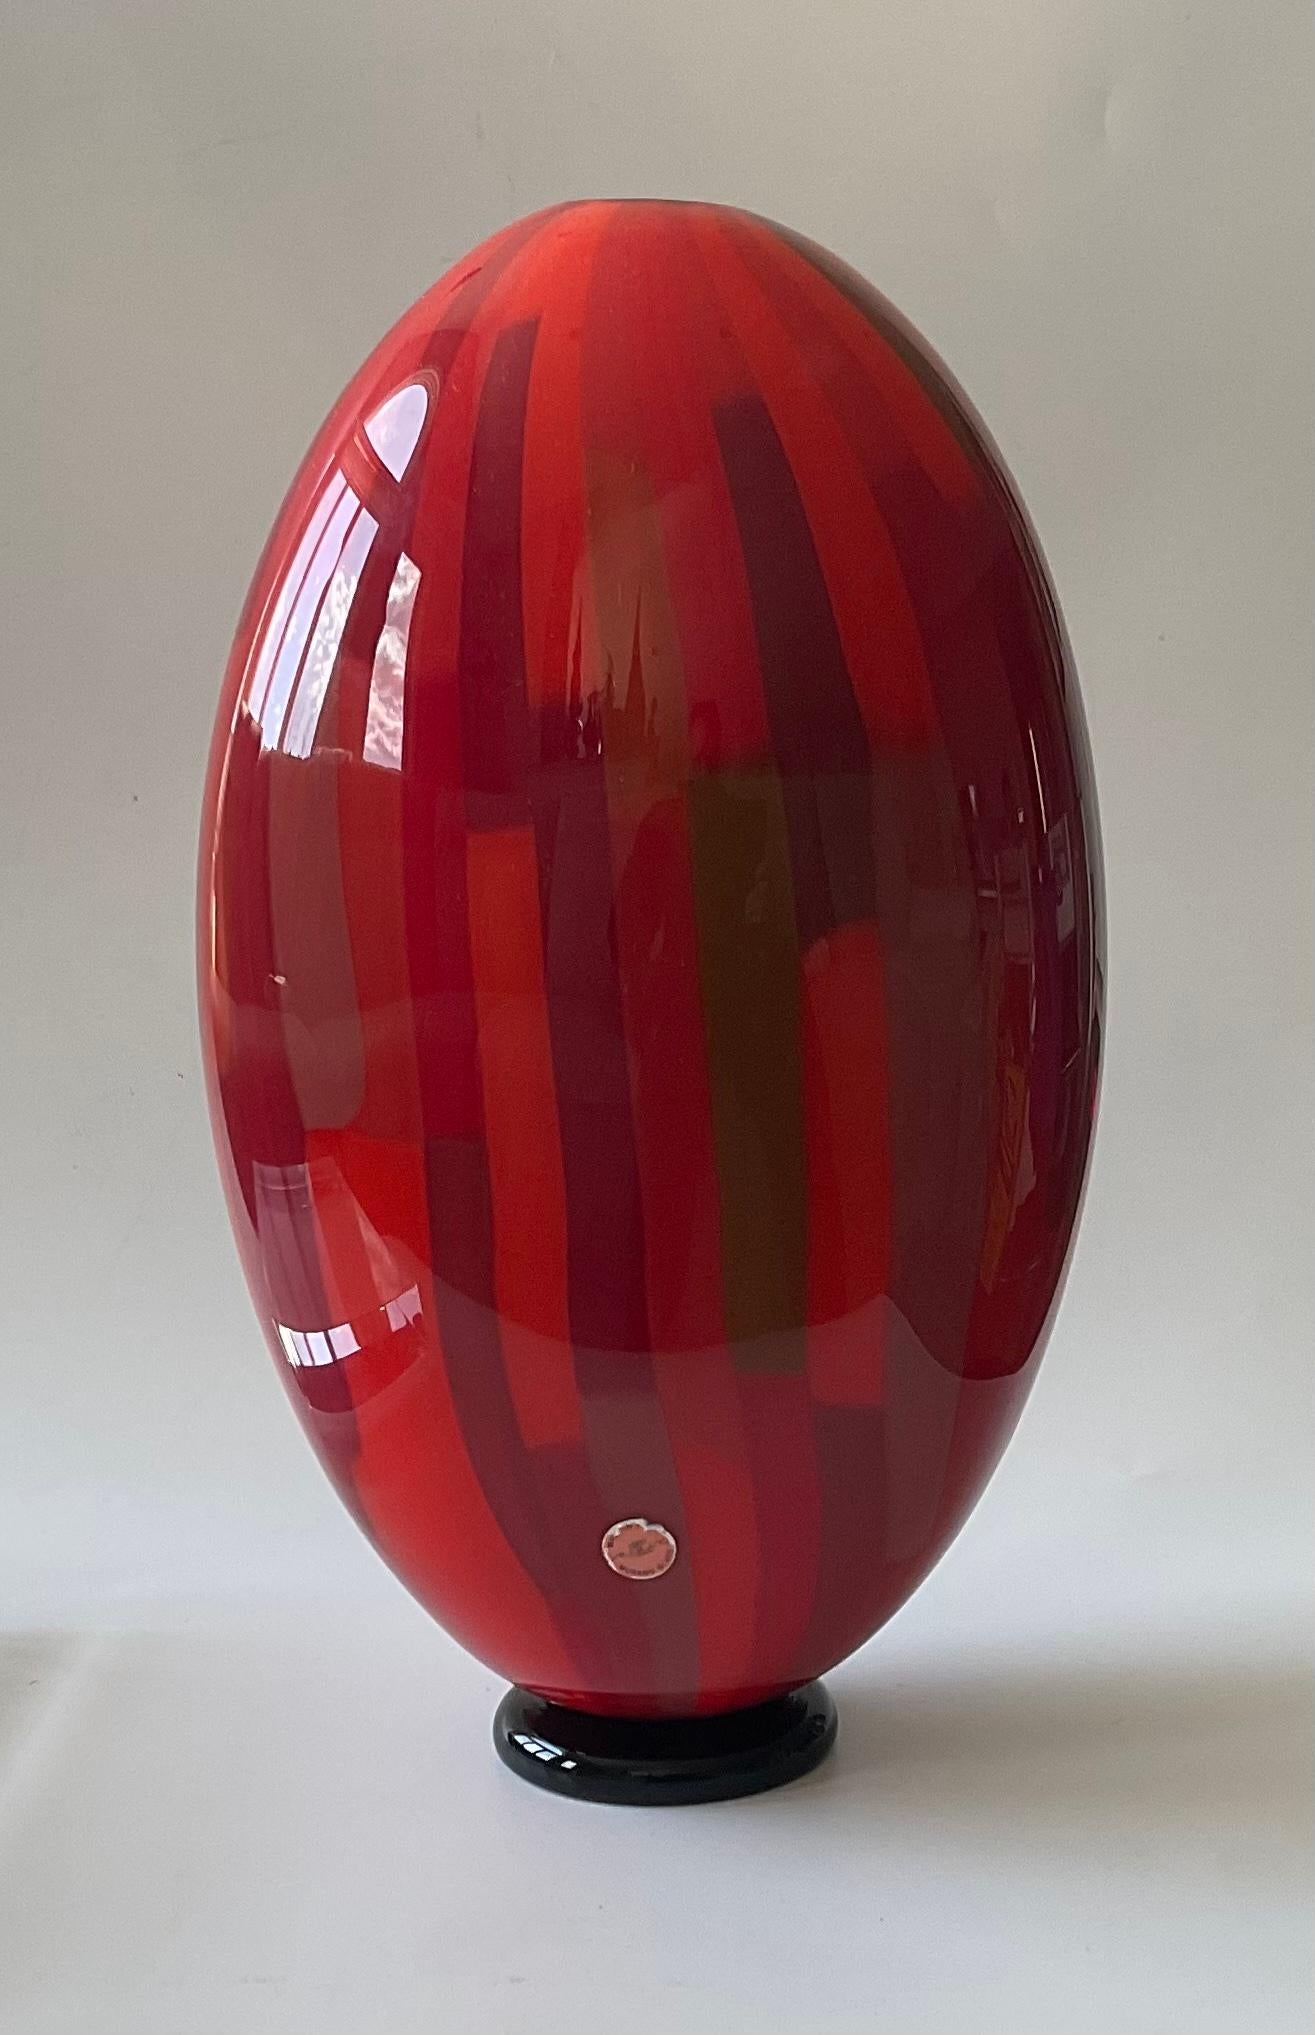 Grand vase Patchwork signé en verre de Murano Seguso Viro rouge vibrant. Signé en script comme indiqué sur la photo du bas. L'étiquette Seguso Viro d'origine a également été conservée. 